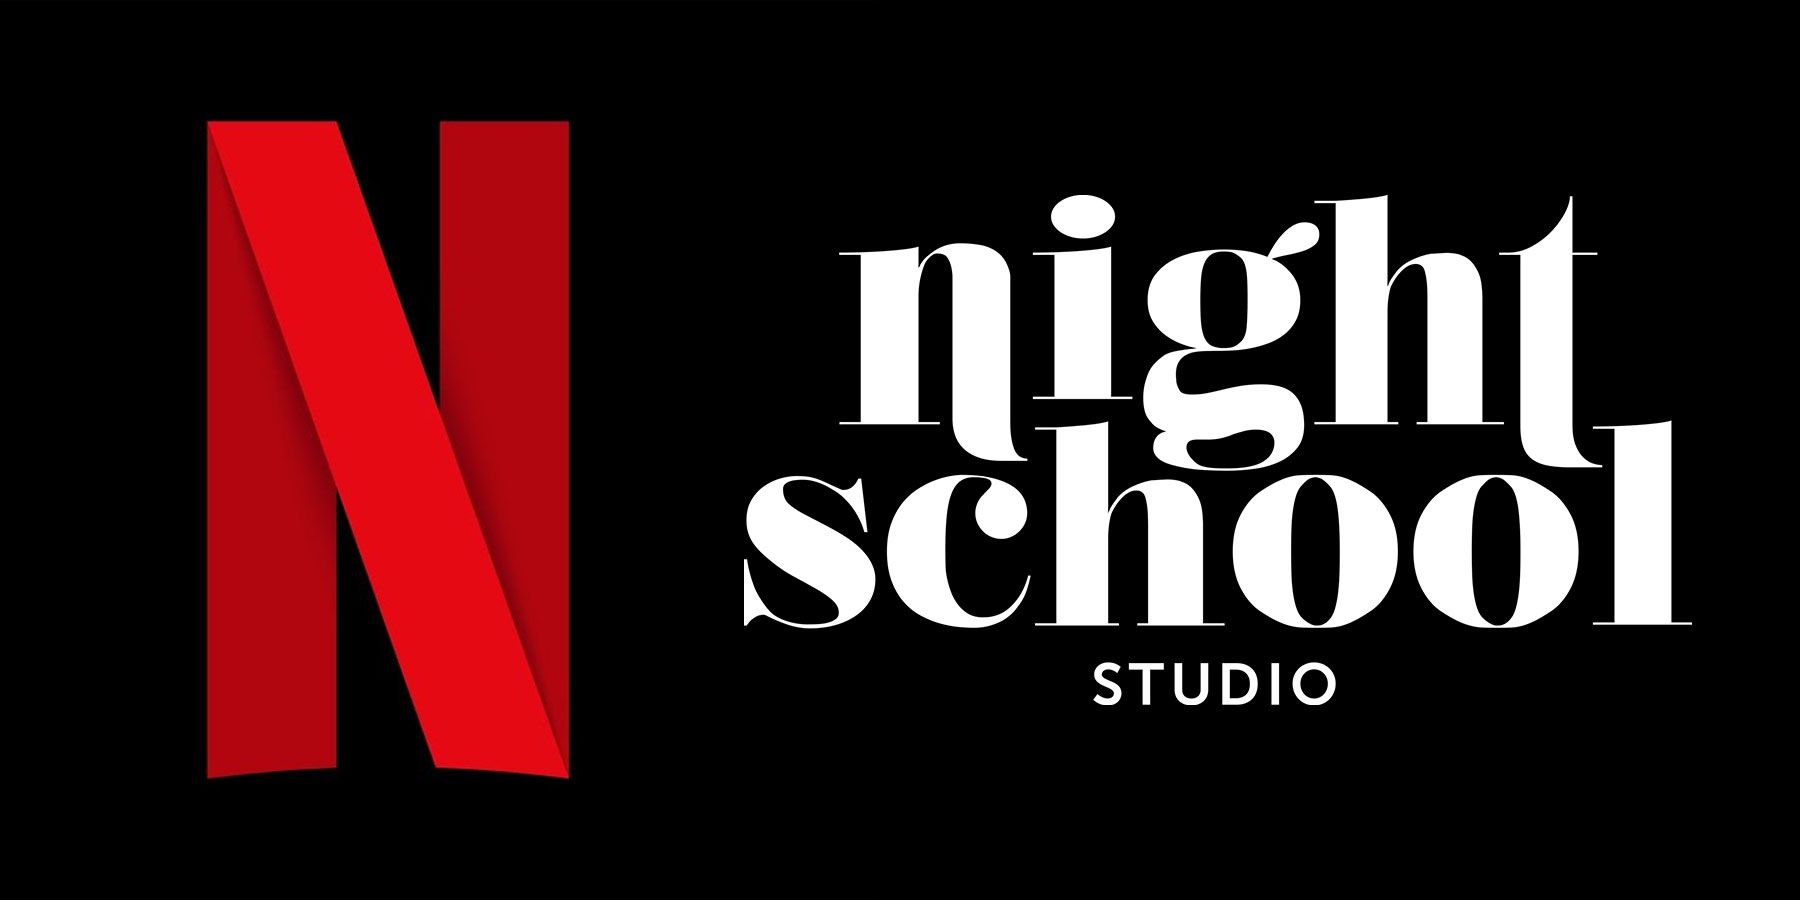 Netflix Acquiring Night School Studio on hyvä merkki suoratoistotavoitteilleen